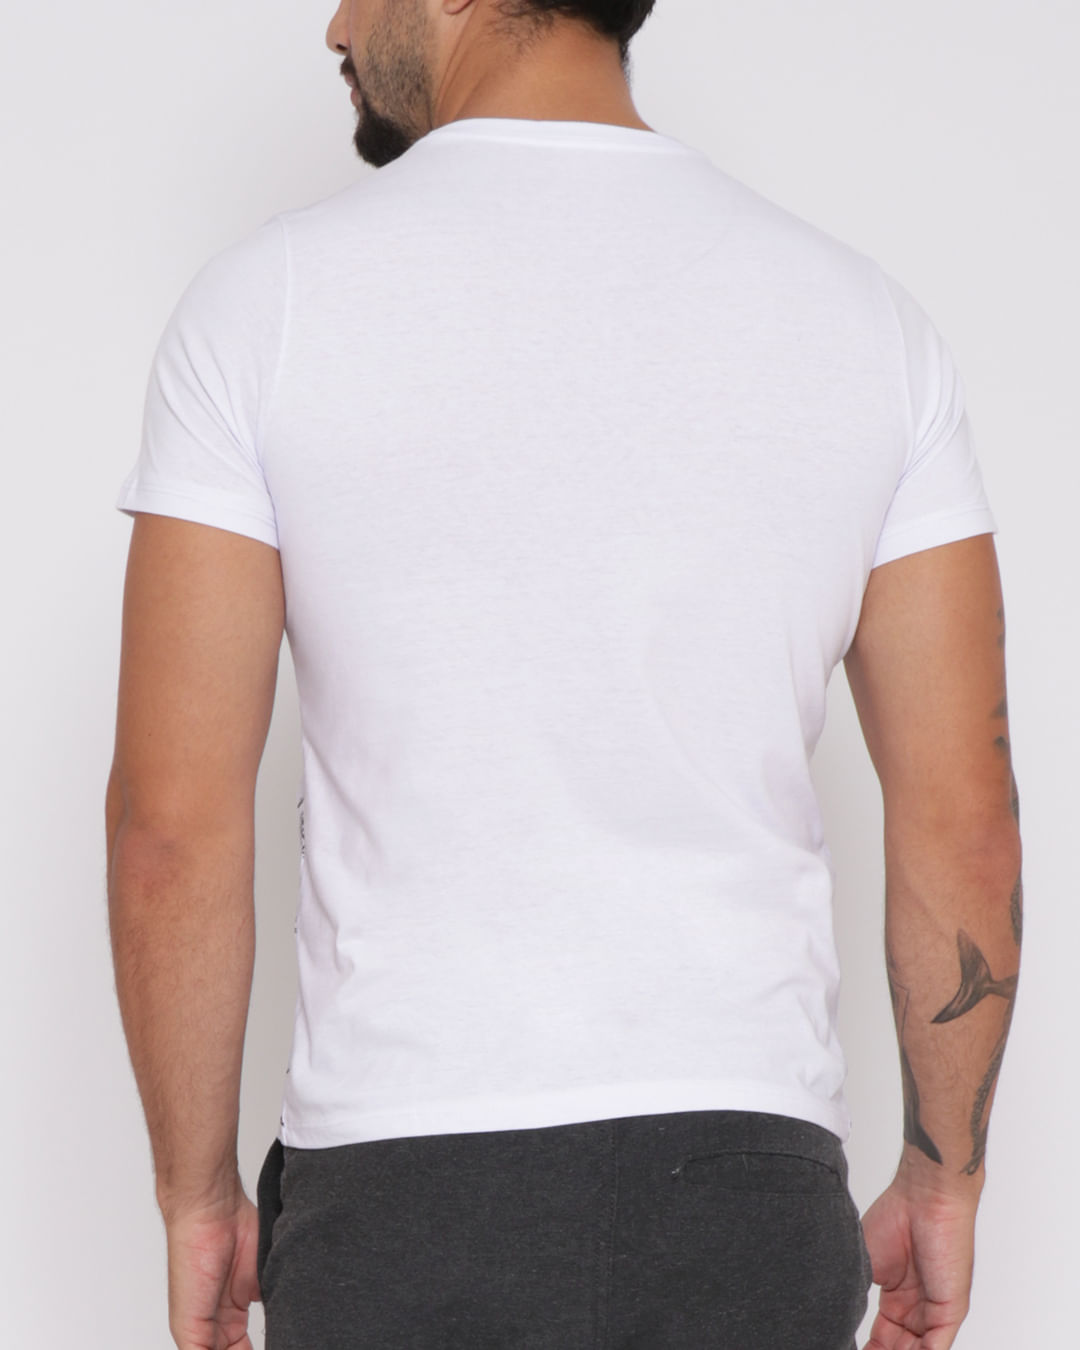 Camiseta-Masculina-Estampa-Esqueleto-Branca